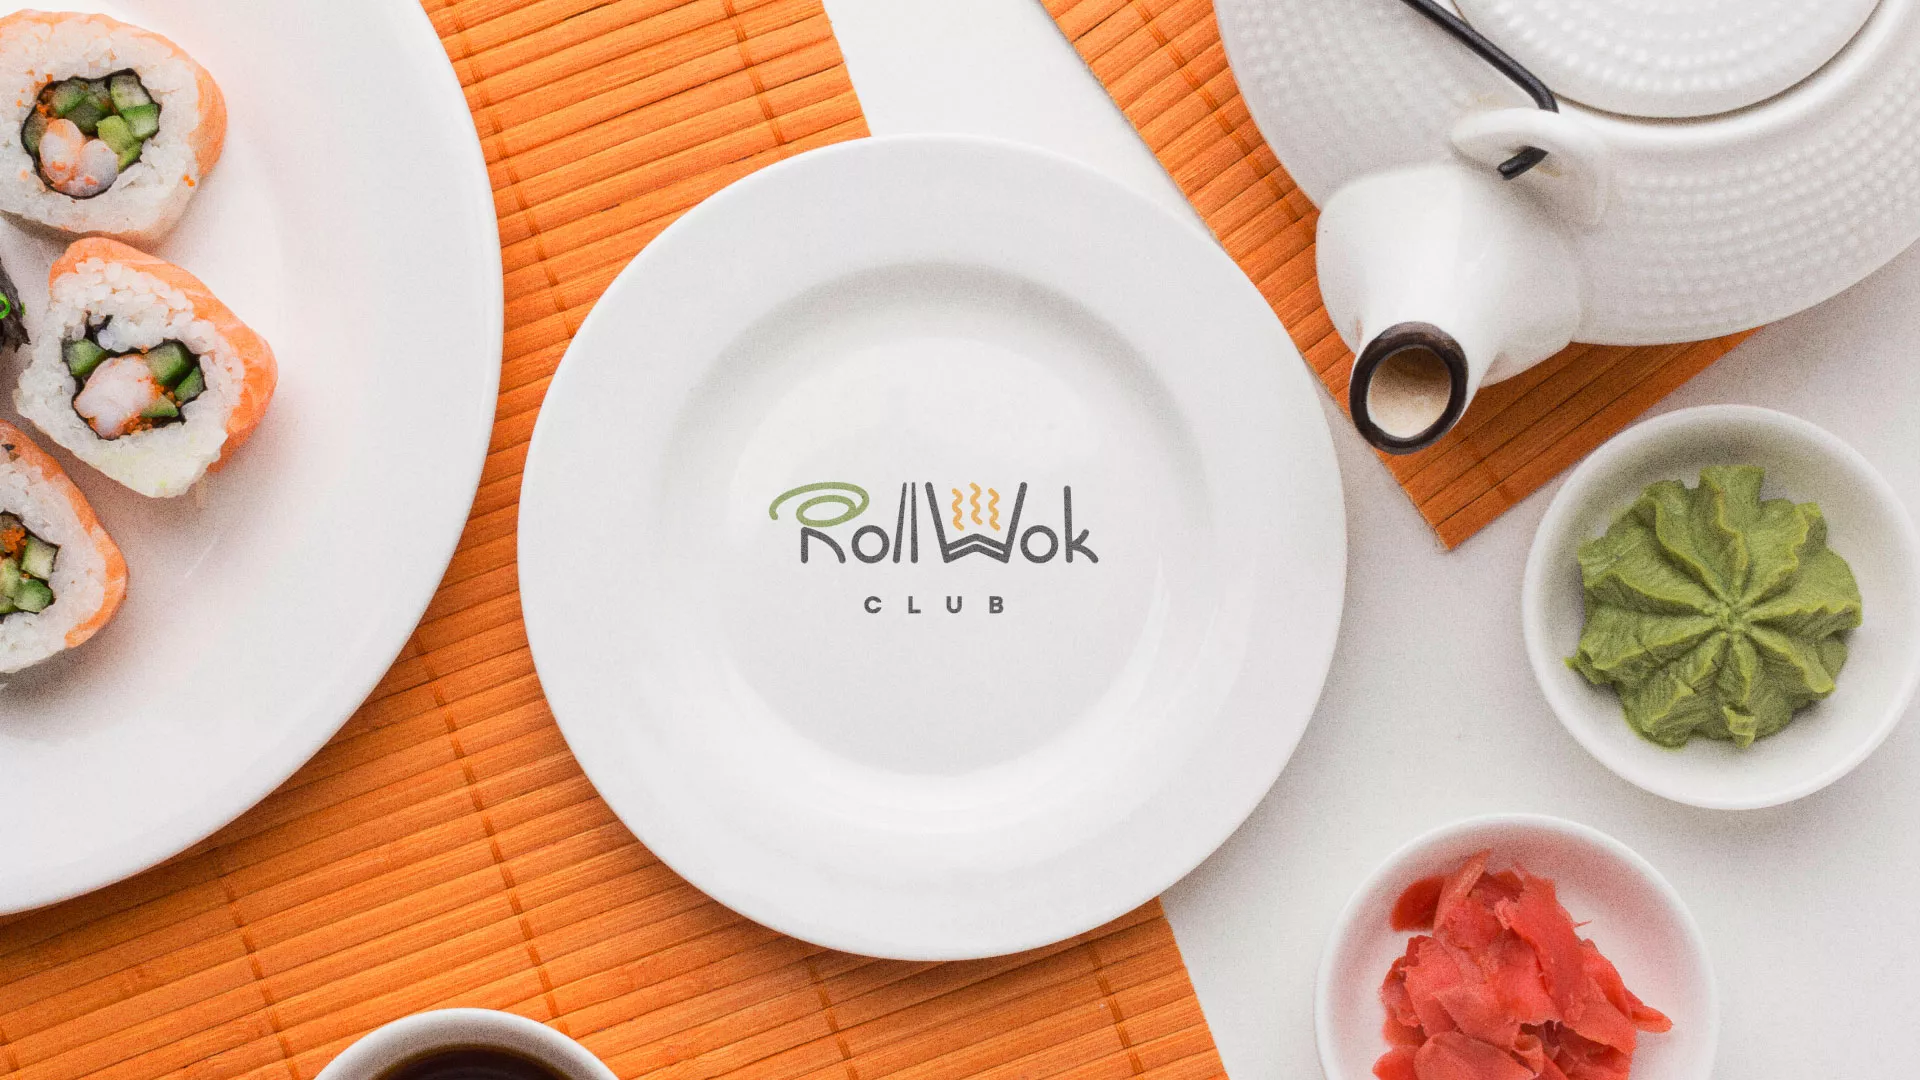 Разработка логотипа и фирменного стиля суши-бара «Roll Wok Club» в Старой Купавне